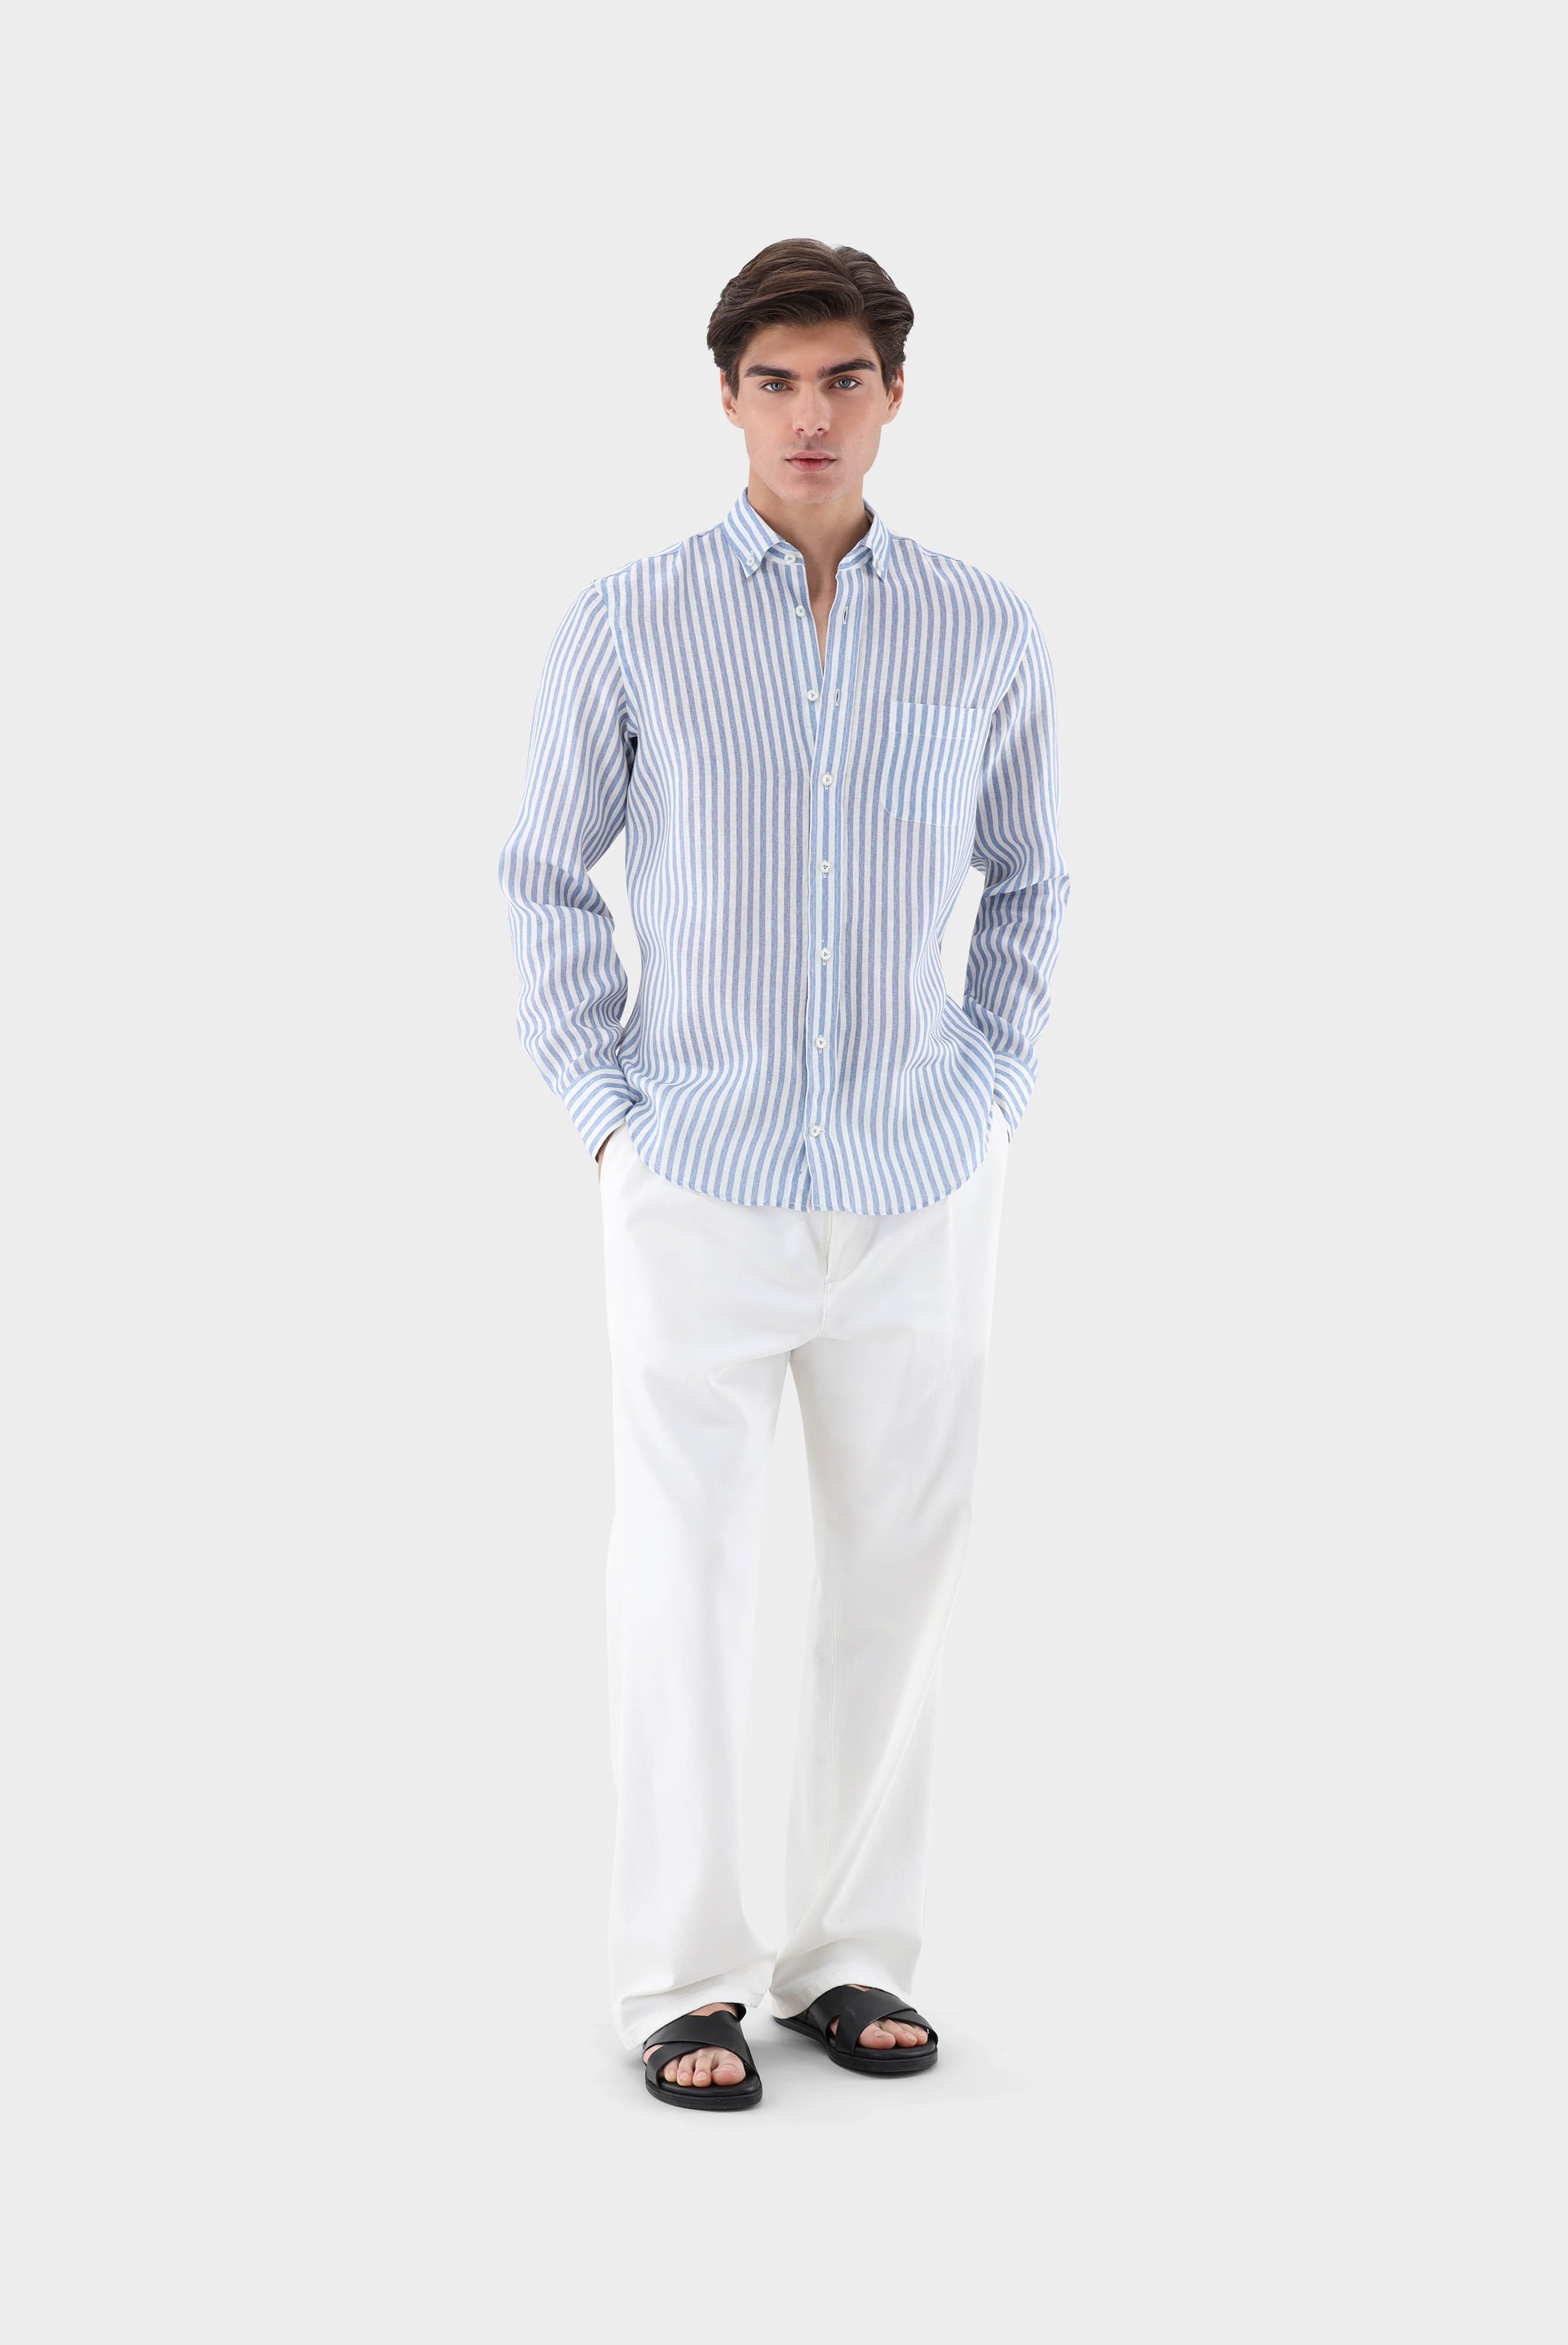 Casual Hemden+Leinenhemd mit Streifen-Druck Tailor Fit+20.2013.9V.170352.740.38